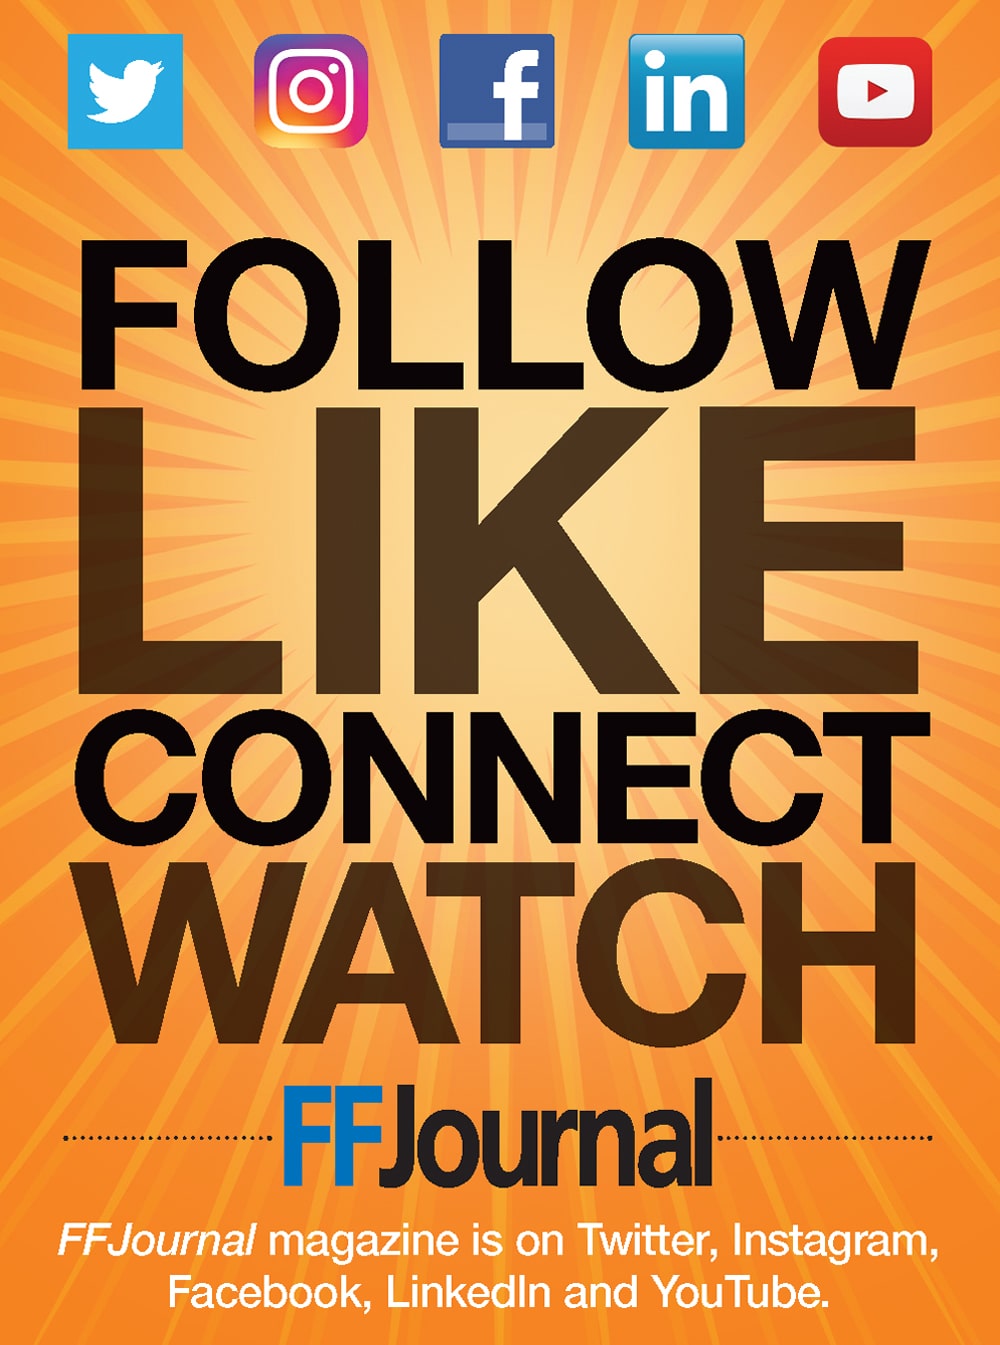 FF Journal Advertisement: FF Journal